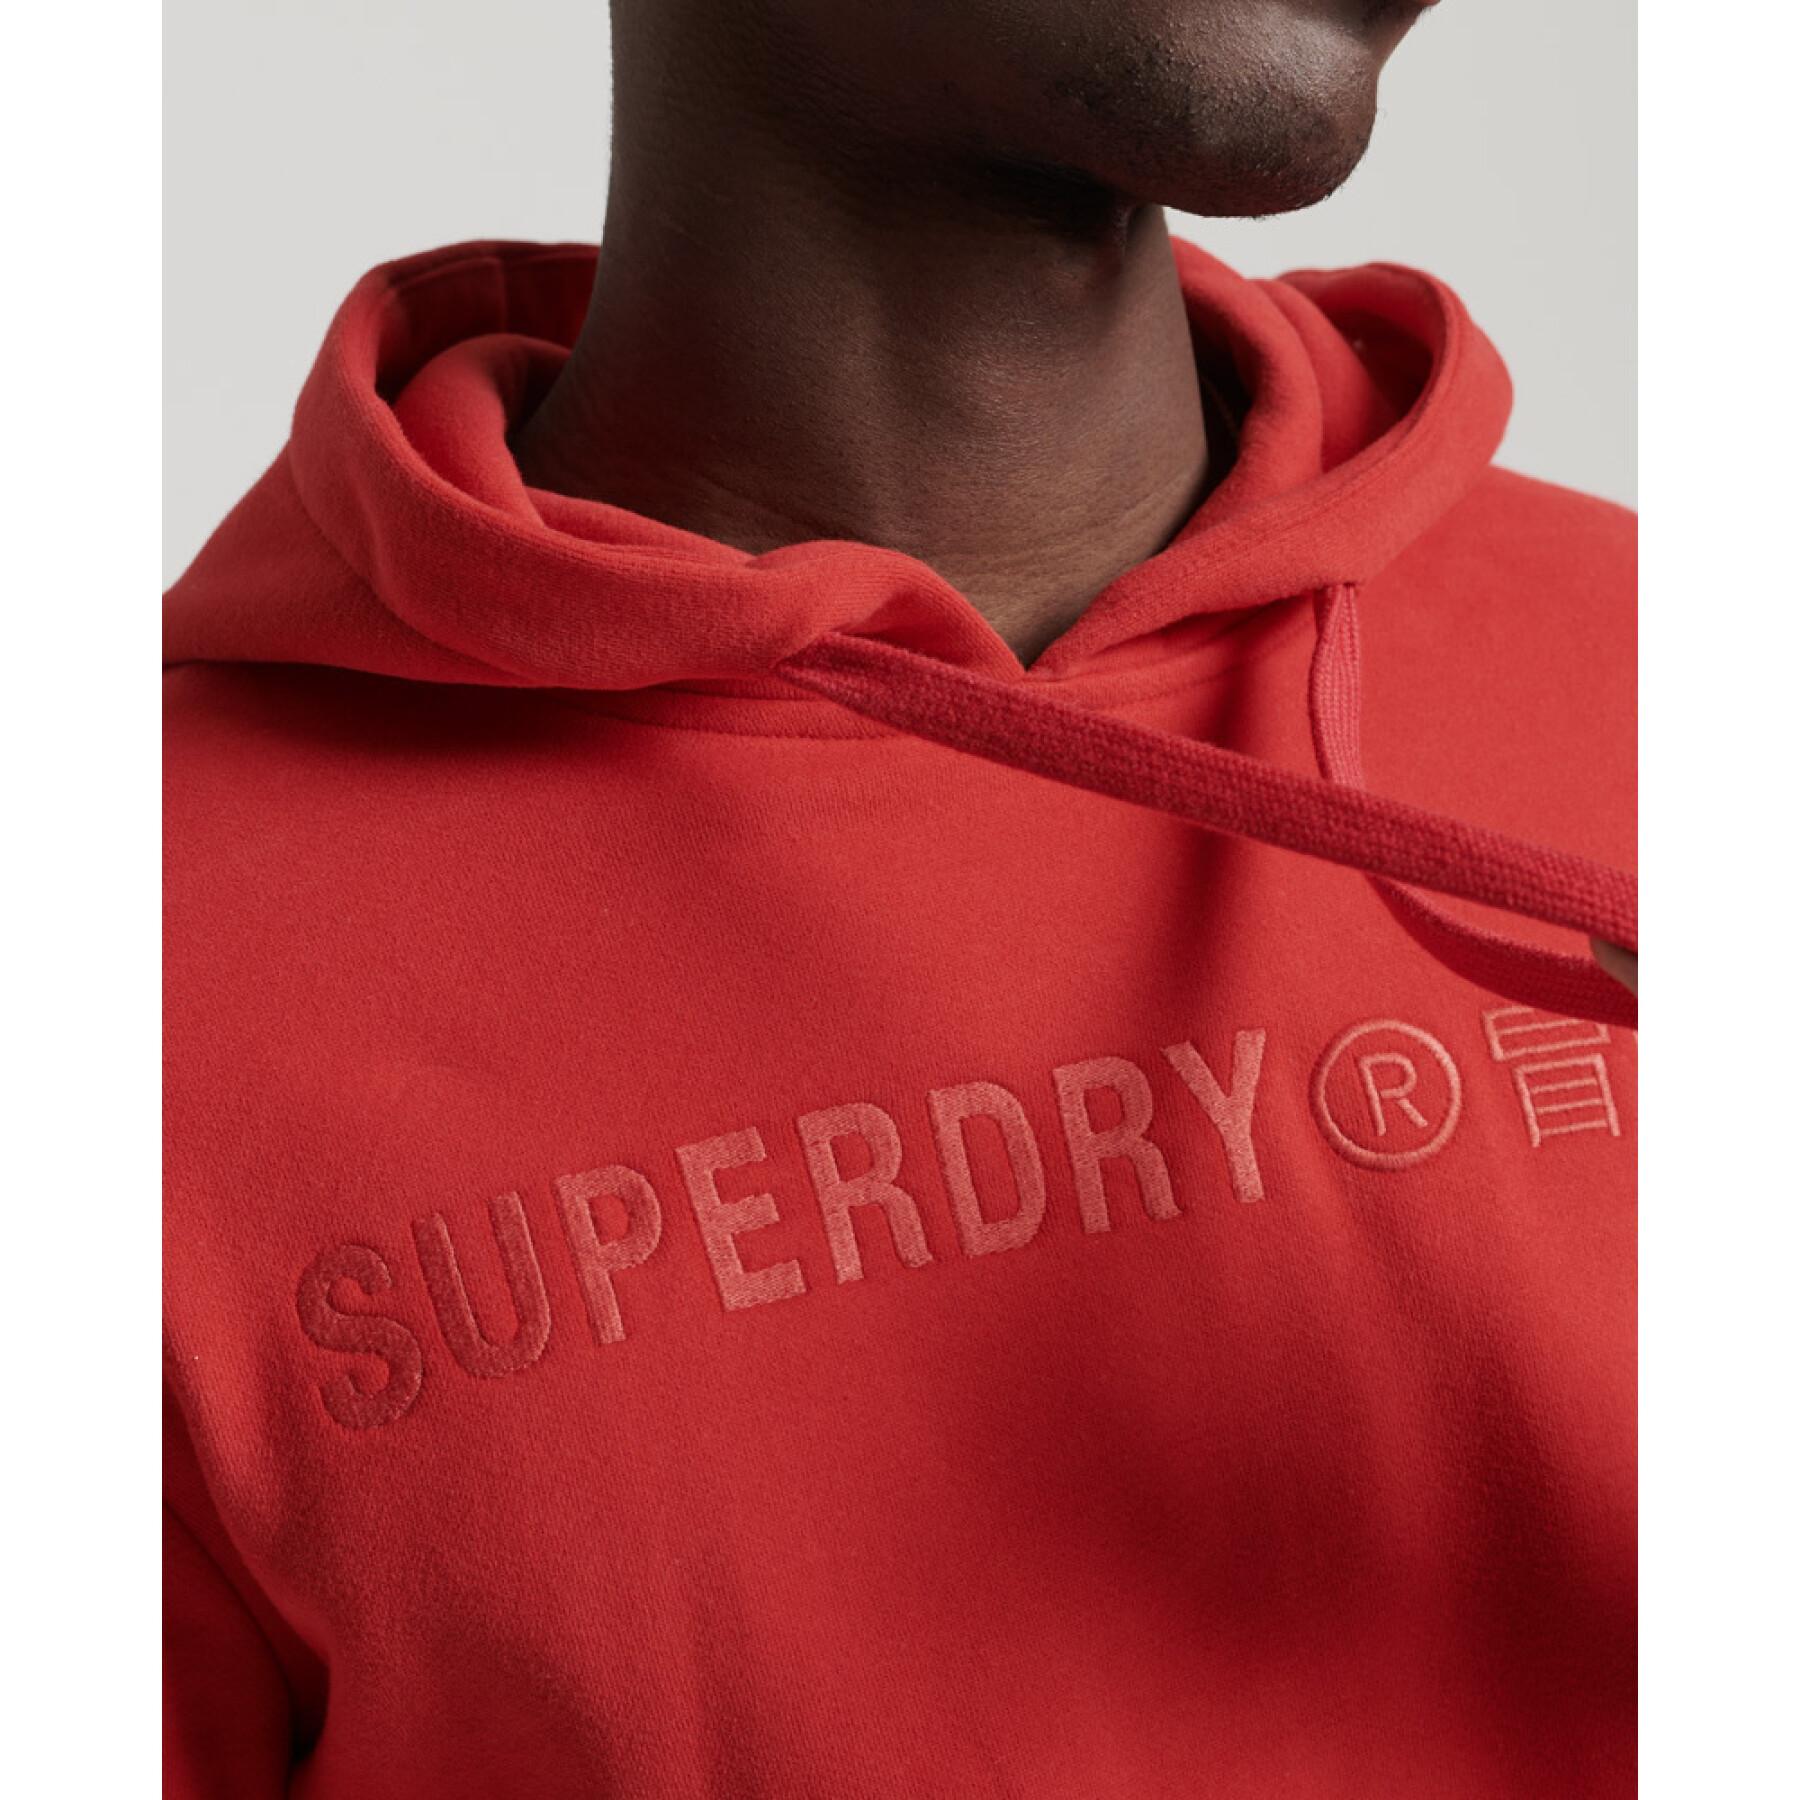 Sweatshirt à capuche Superdry Vintage Corporate Logo